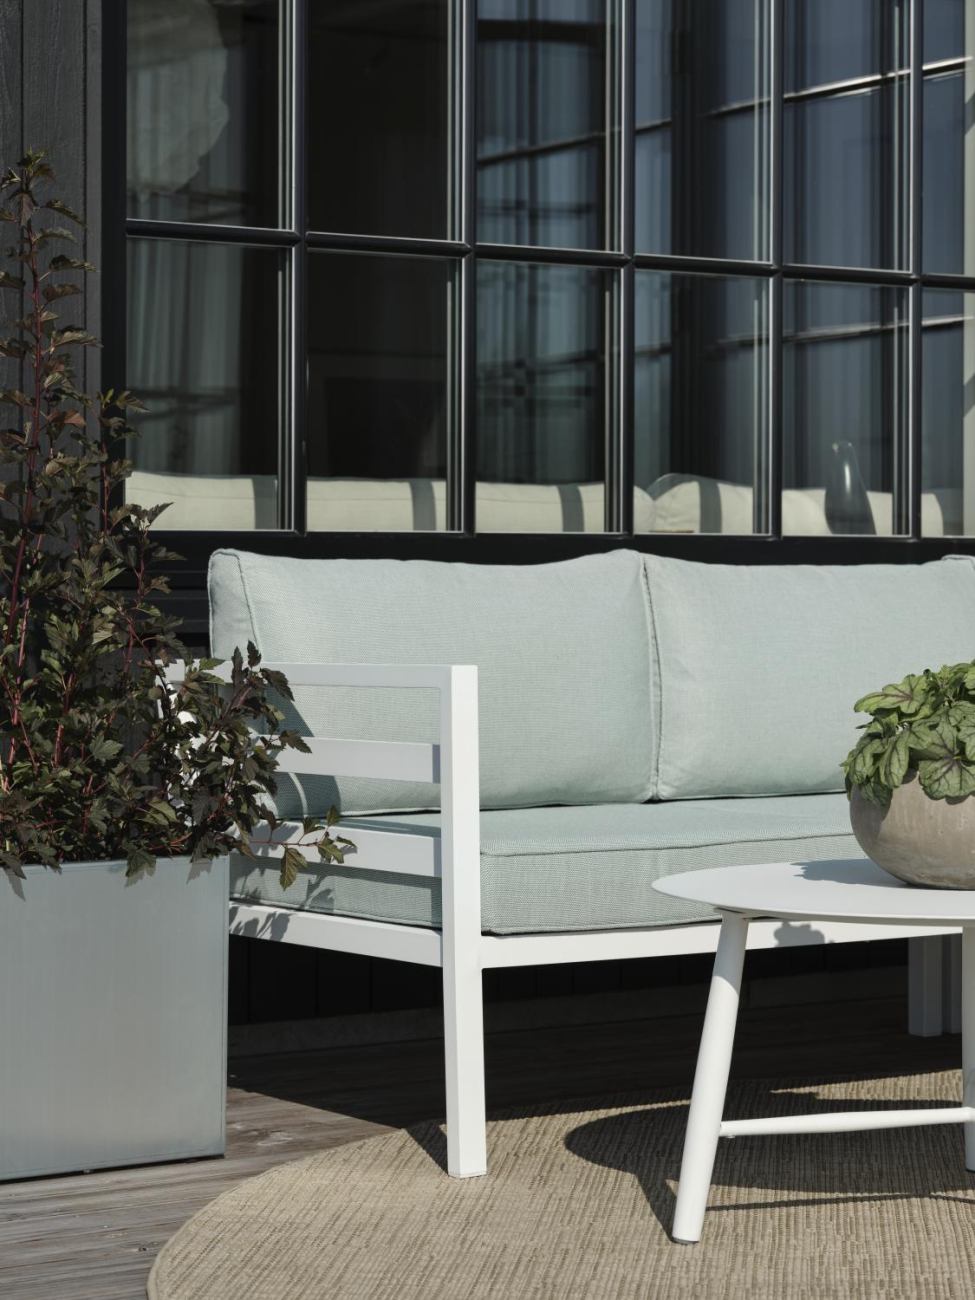 Das Gartenecksofa Weldon überzeugt mit seinem modernen Design. Gefertigt wurde er aus Stoff, welcher einen hellgrauen Farbton besitzt. Das Gestell ist aus Metall und hat eine weiße Farbe. Die Sitzhöhe des Sofas beträgt 43 cm.